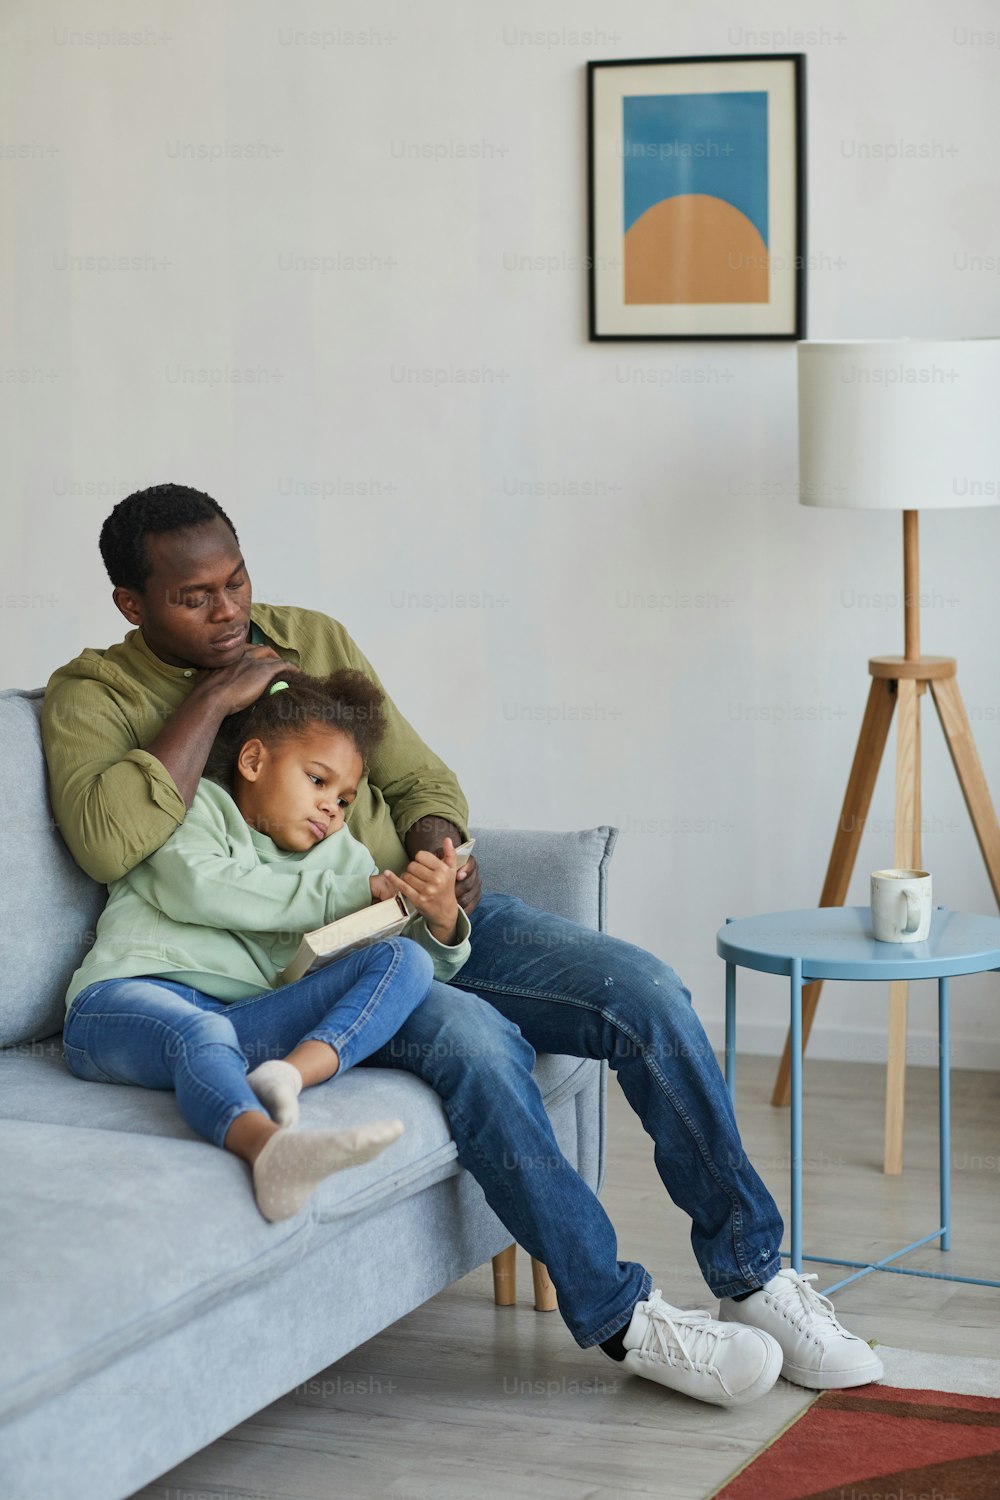 Ganzkörperporträt eines liebevollen afroamerikanischen Vaters und einer Tochter, die lesen, während sie zusammen auf der Couch in einem gemütlichen Wohnraum sitzen